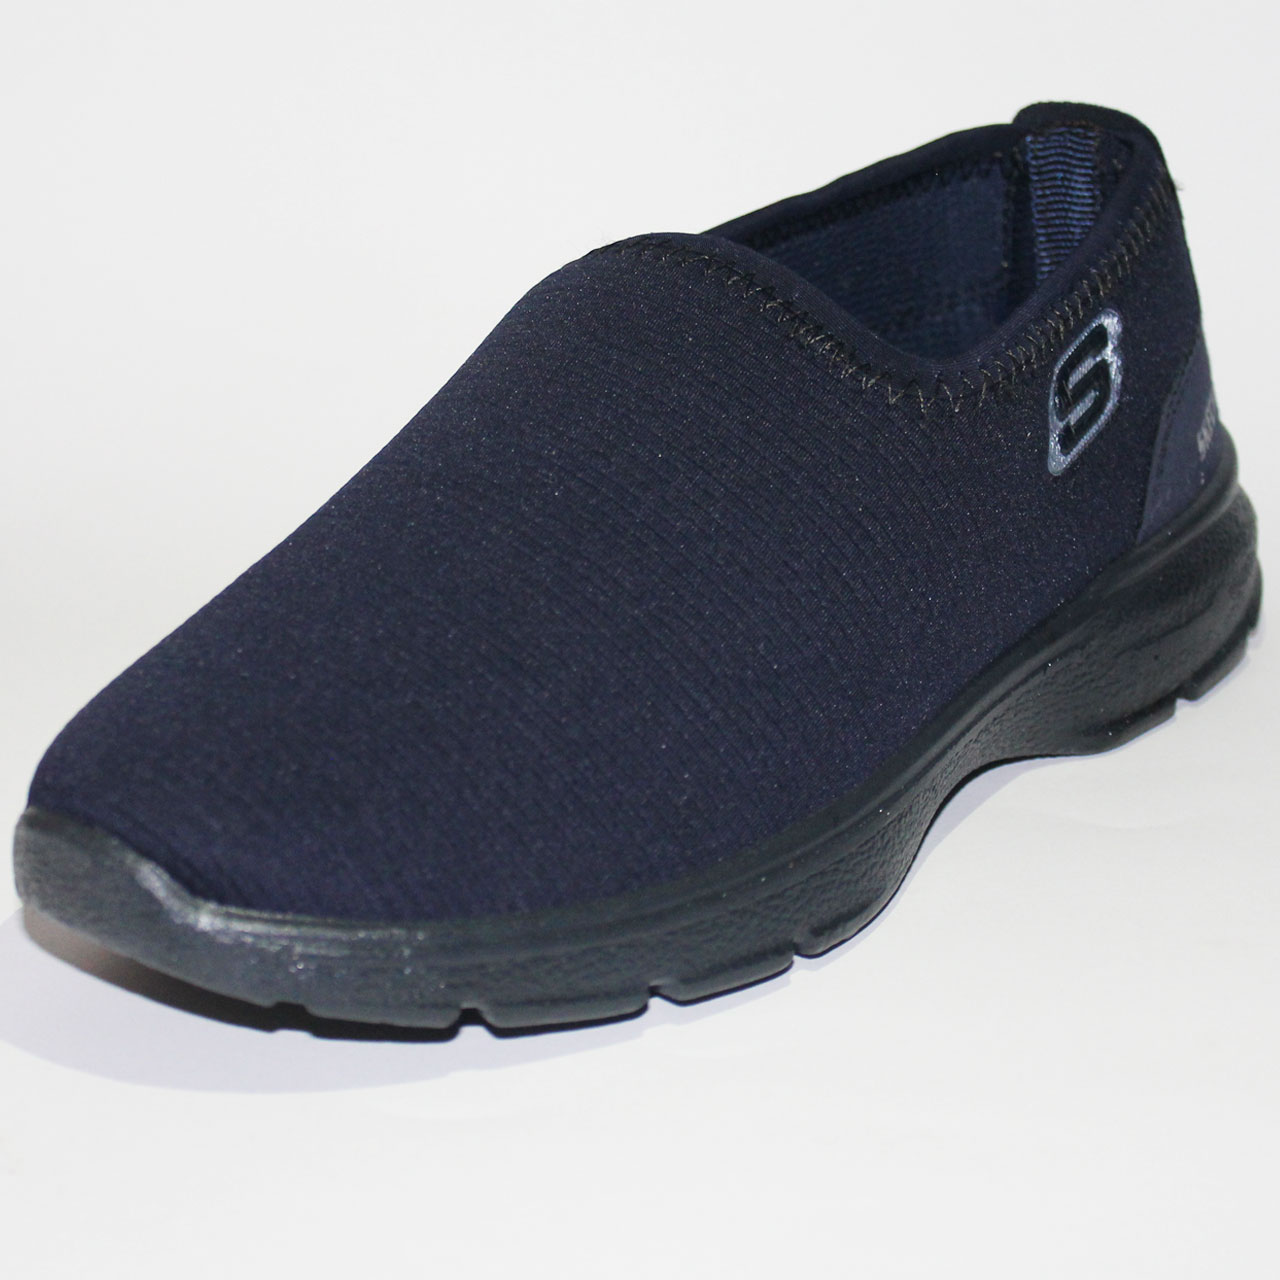 کفش راحتی مردانه مدل 1 پازین کد PZ 4040 rahati1 S